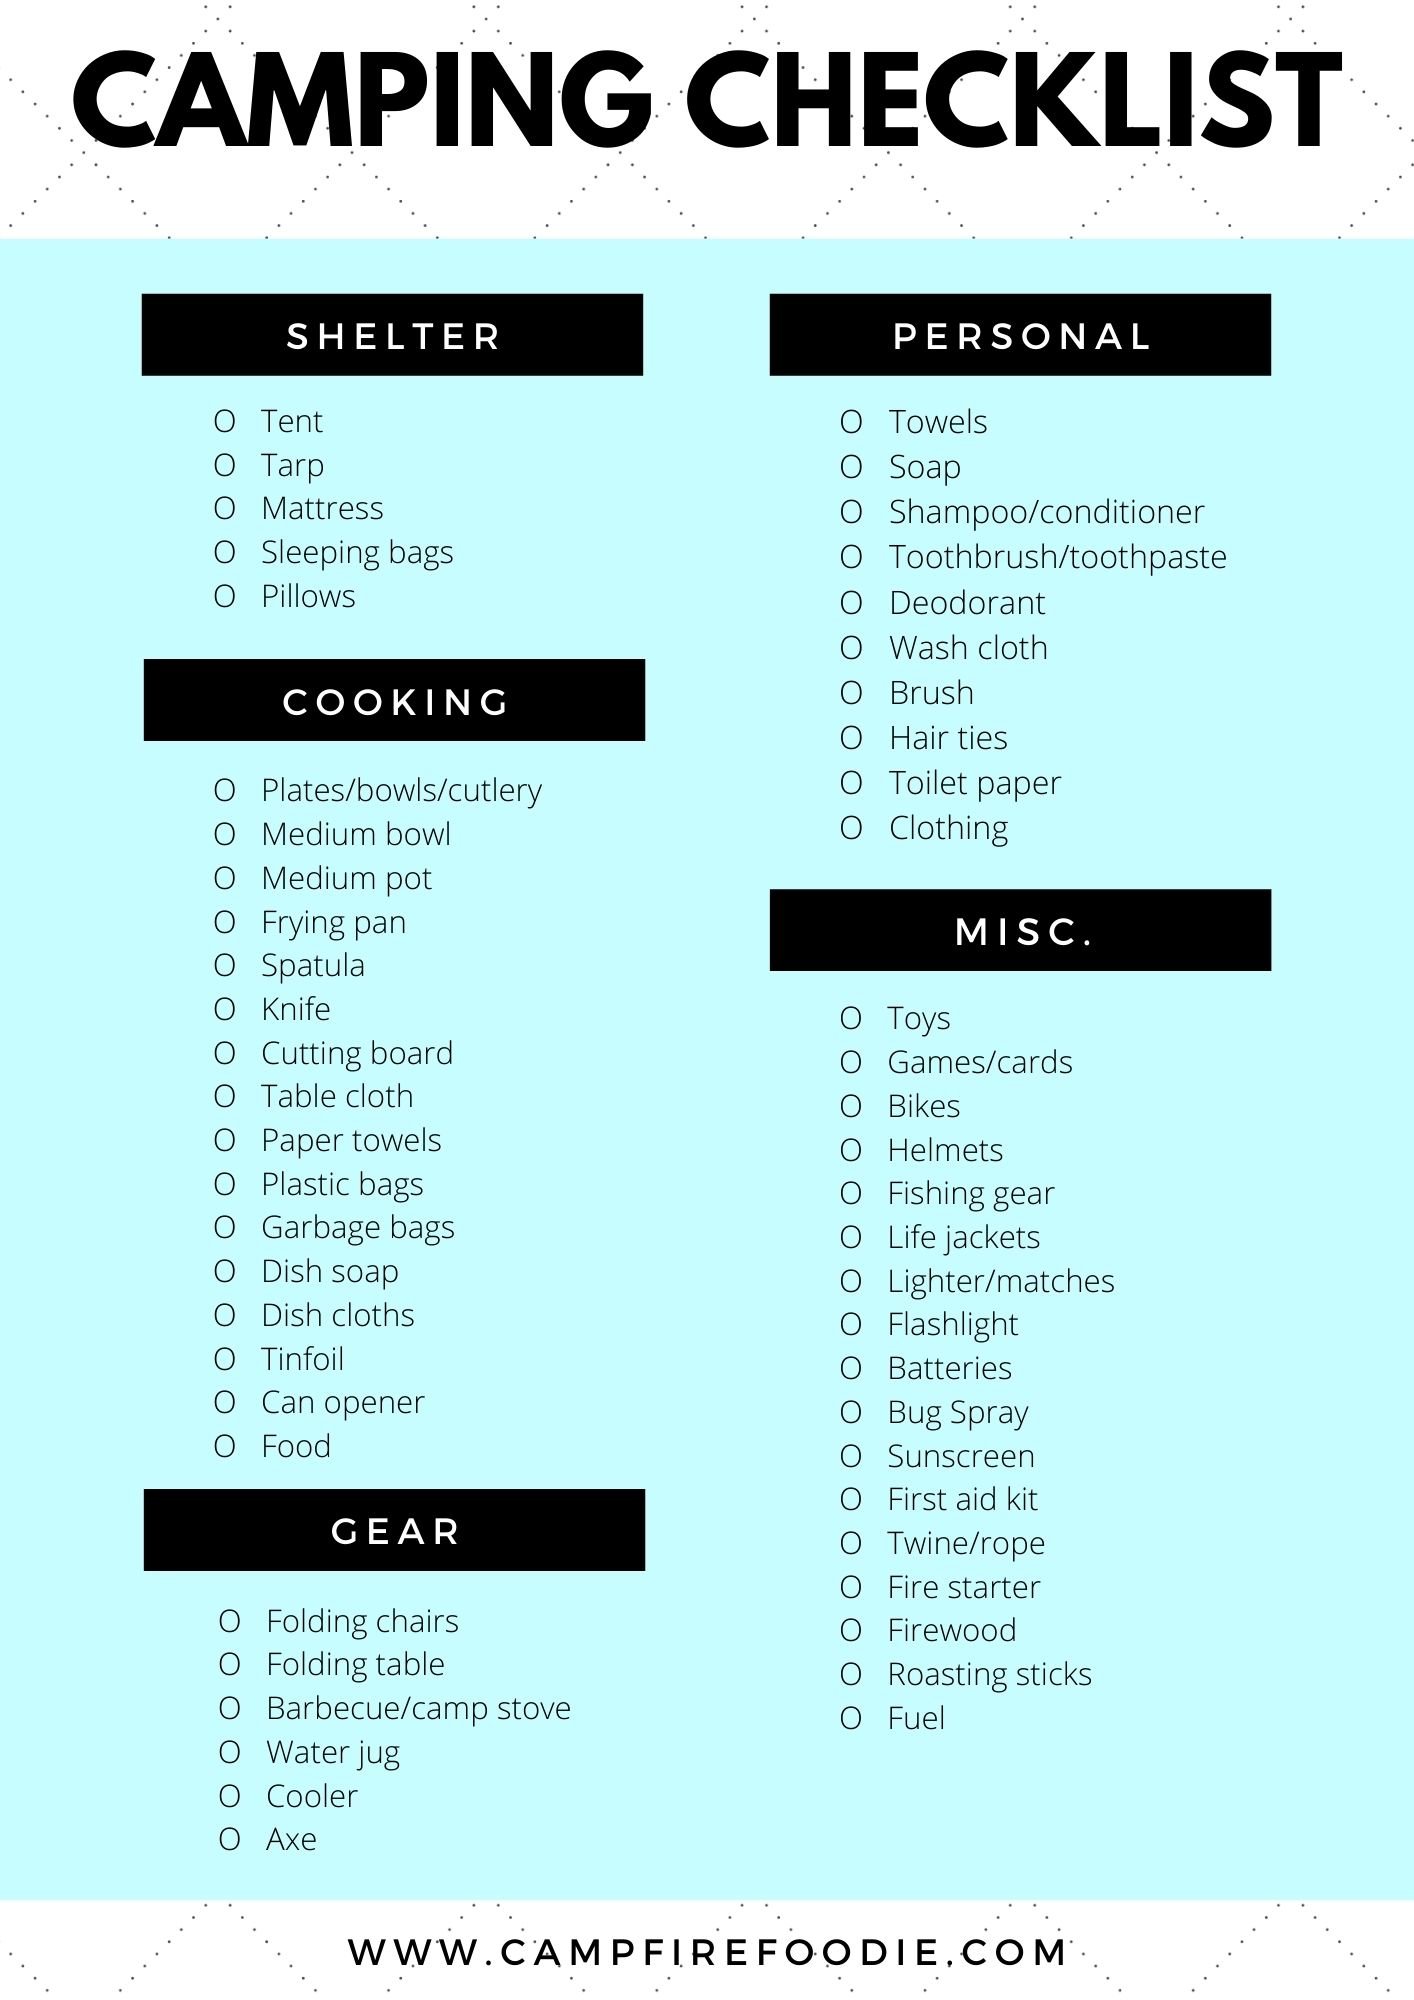 Campfire Foodie Camping Checklist